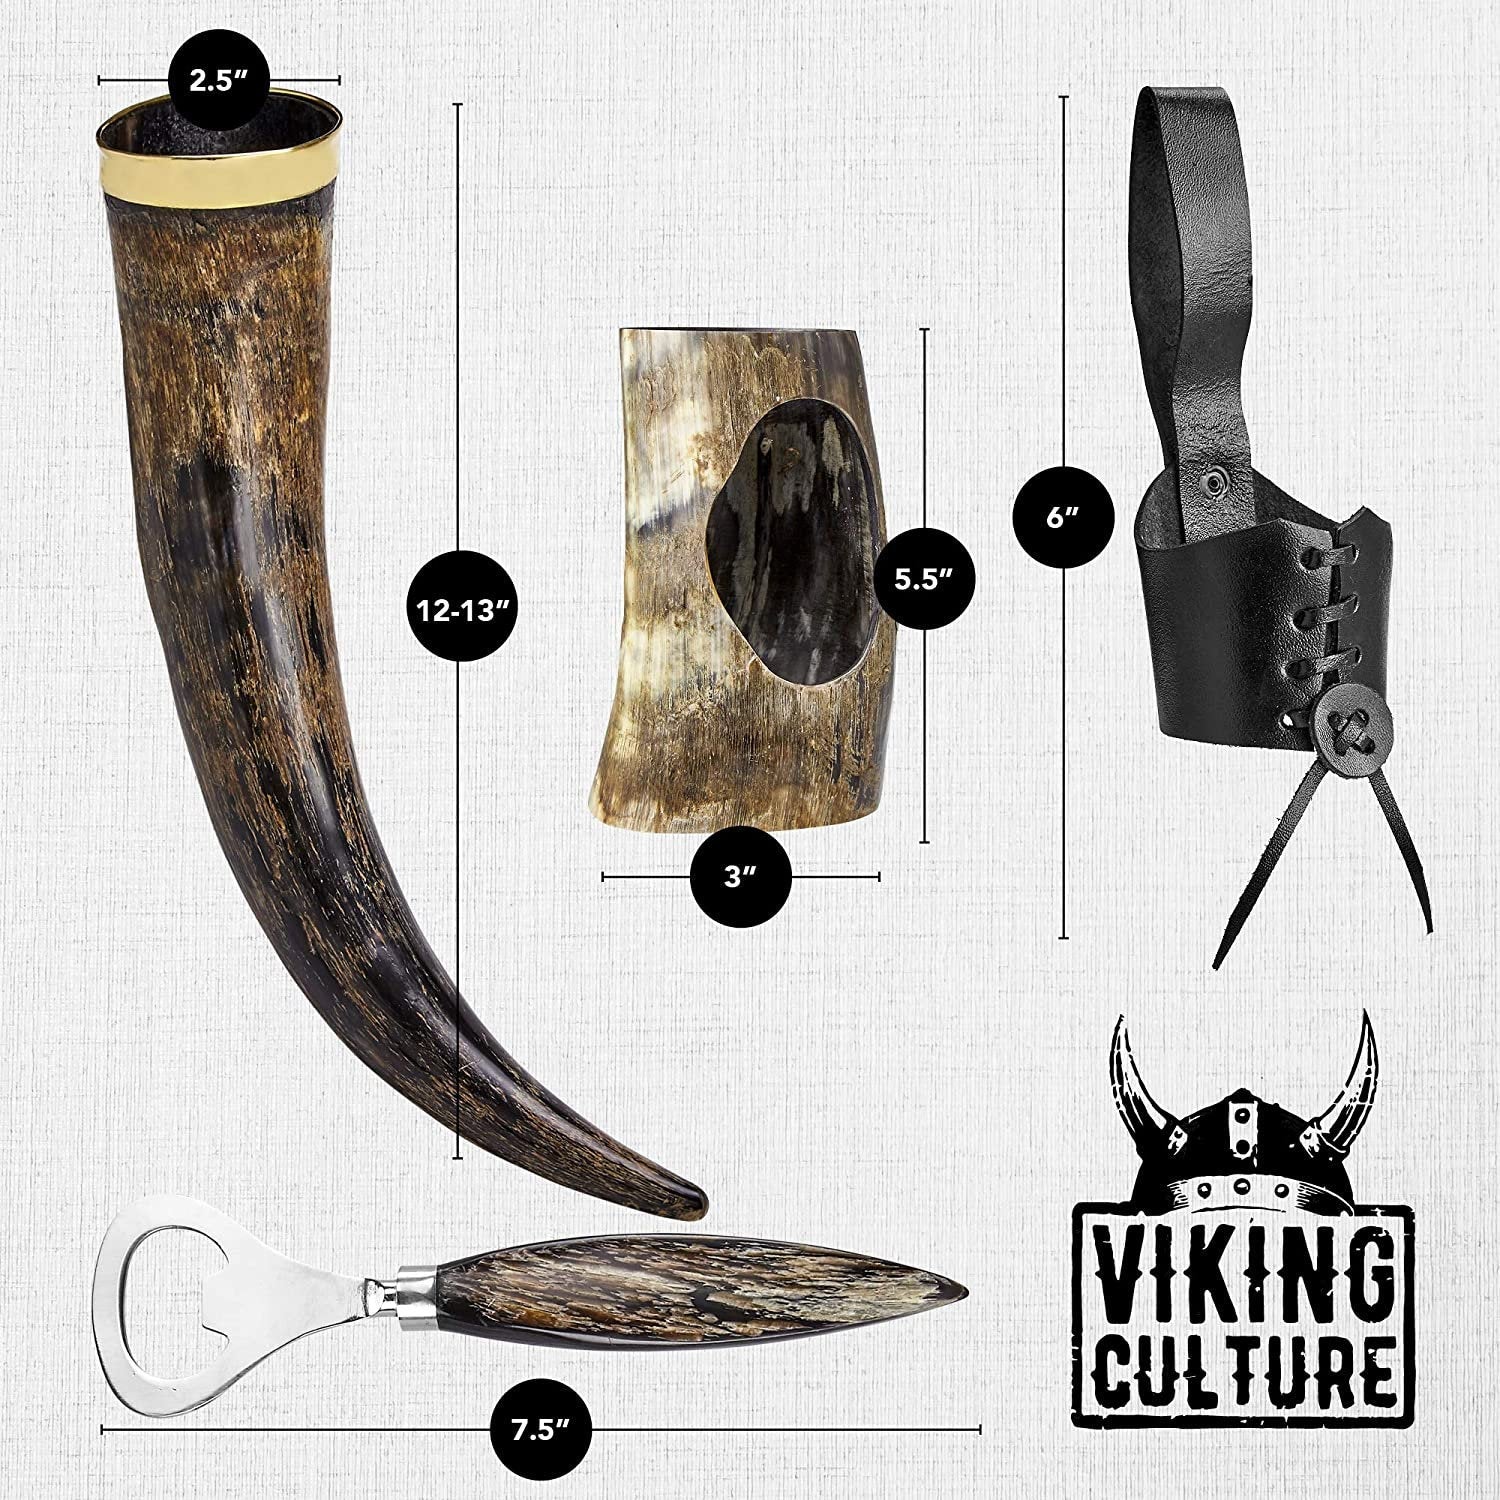 Viking Culture 16 oz. Viking Horn Mug with Beer Opener, Stand, Genuine Leather Belt Holster and Vintage Burlap Bag, Natural Finished